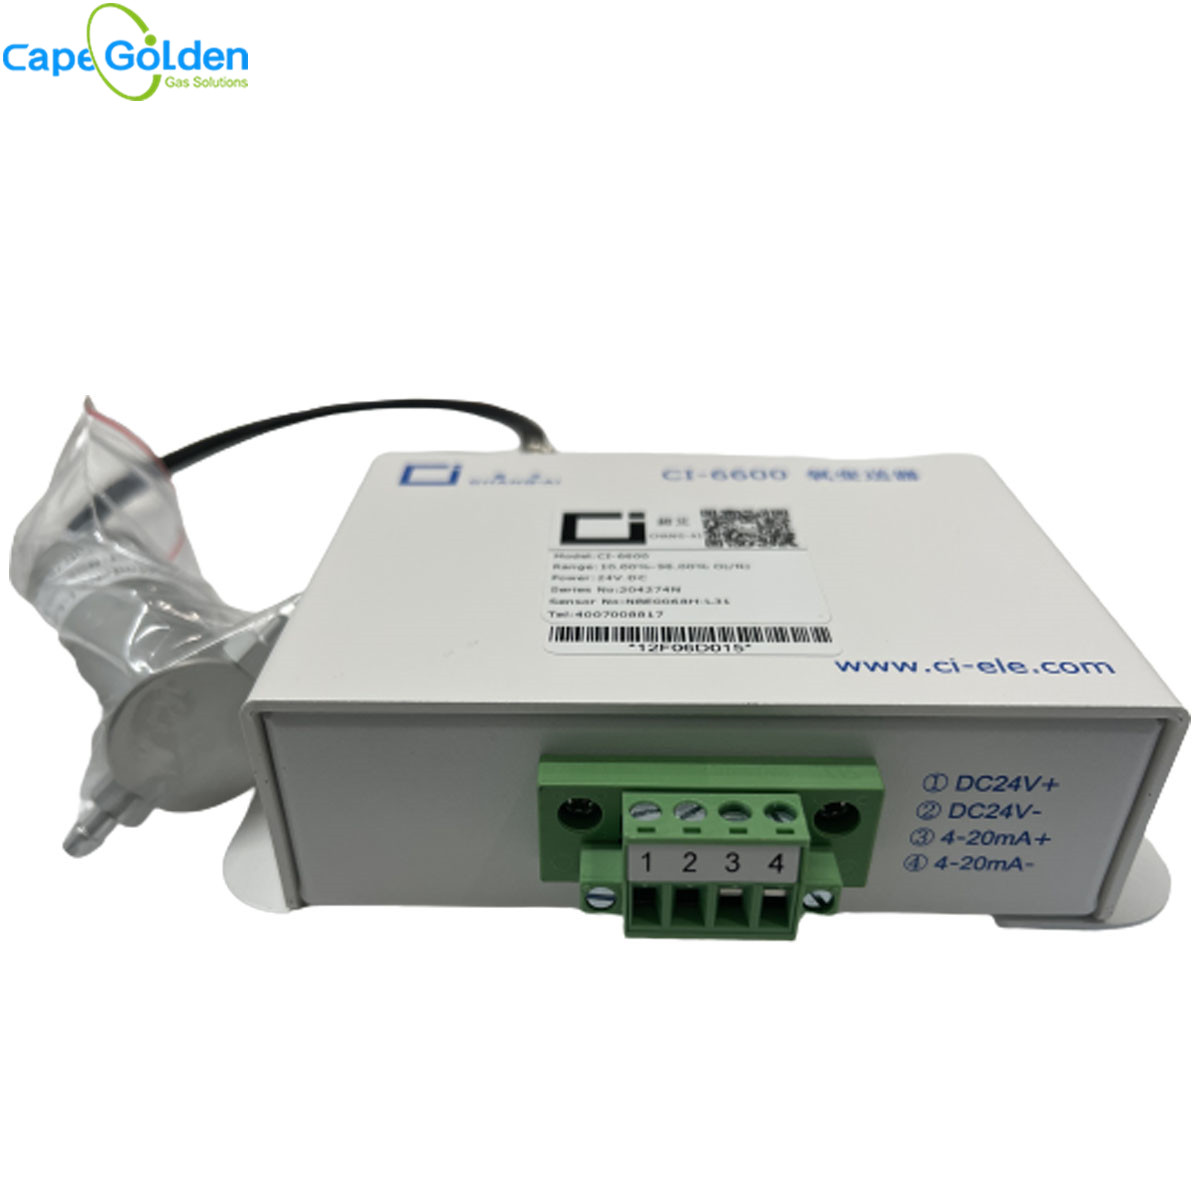 CI-6600 Oxygen O2 Gas Analyzer